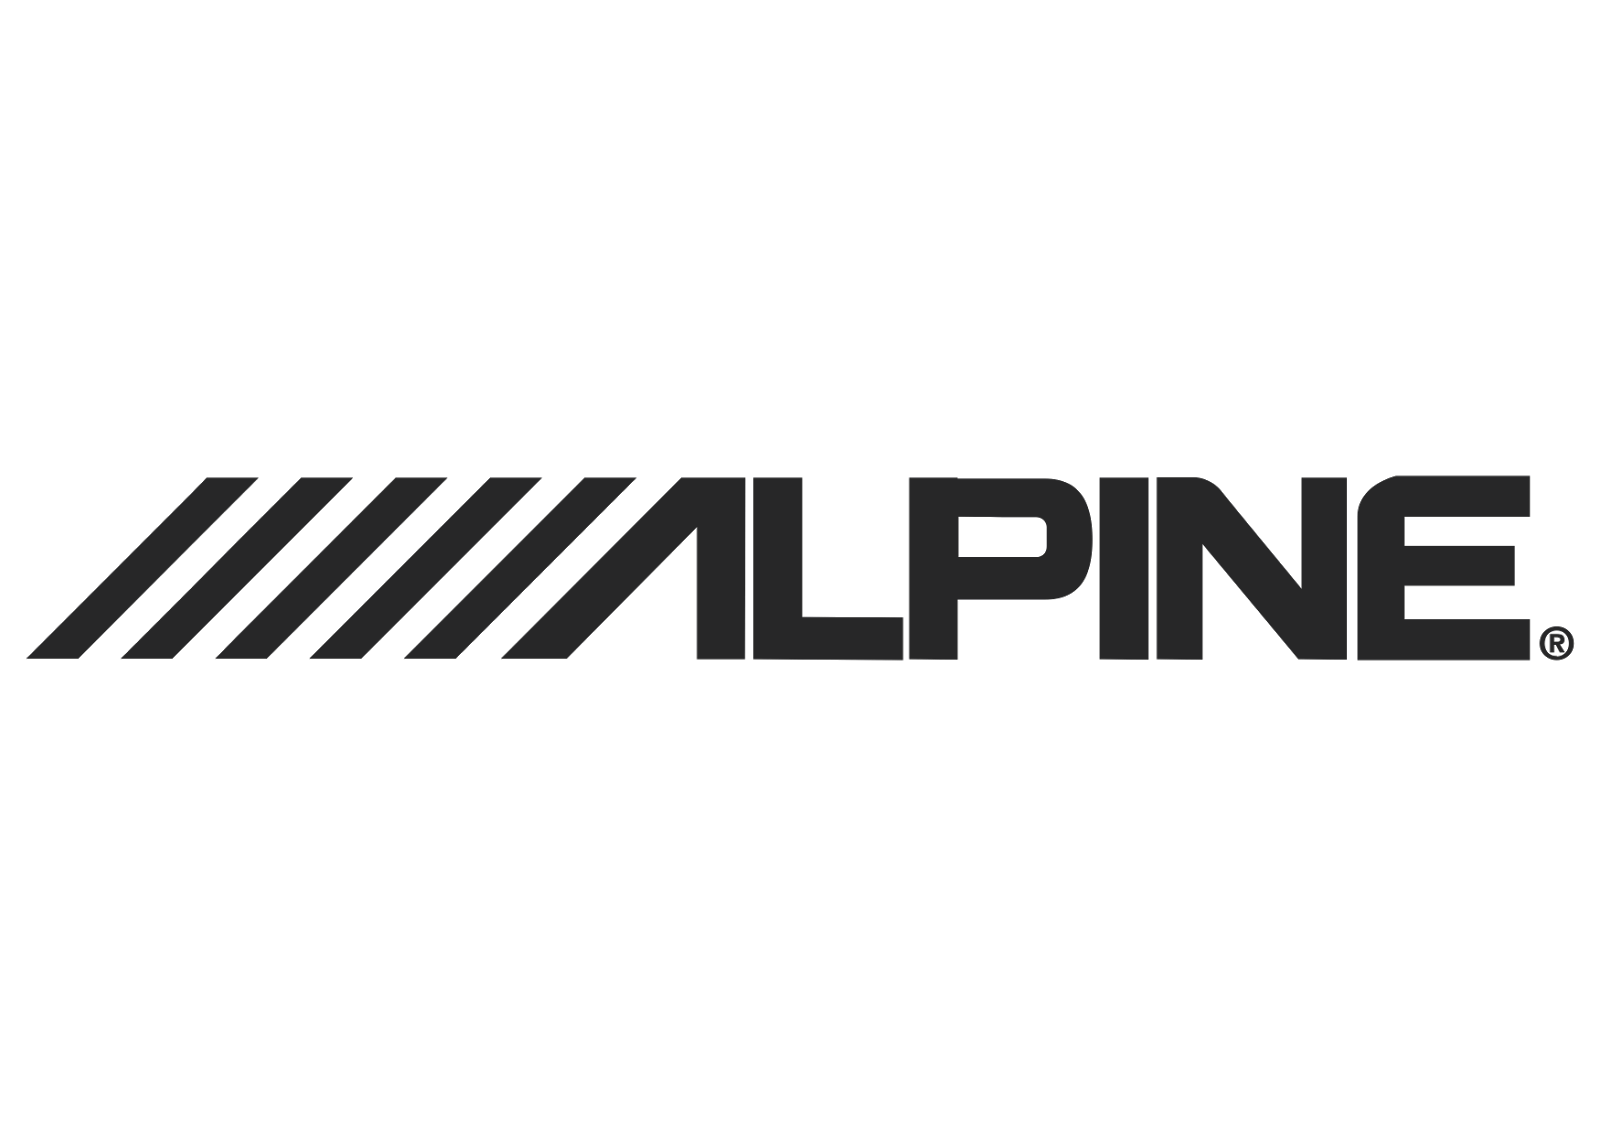 File:MP3 logo.png